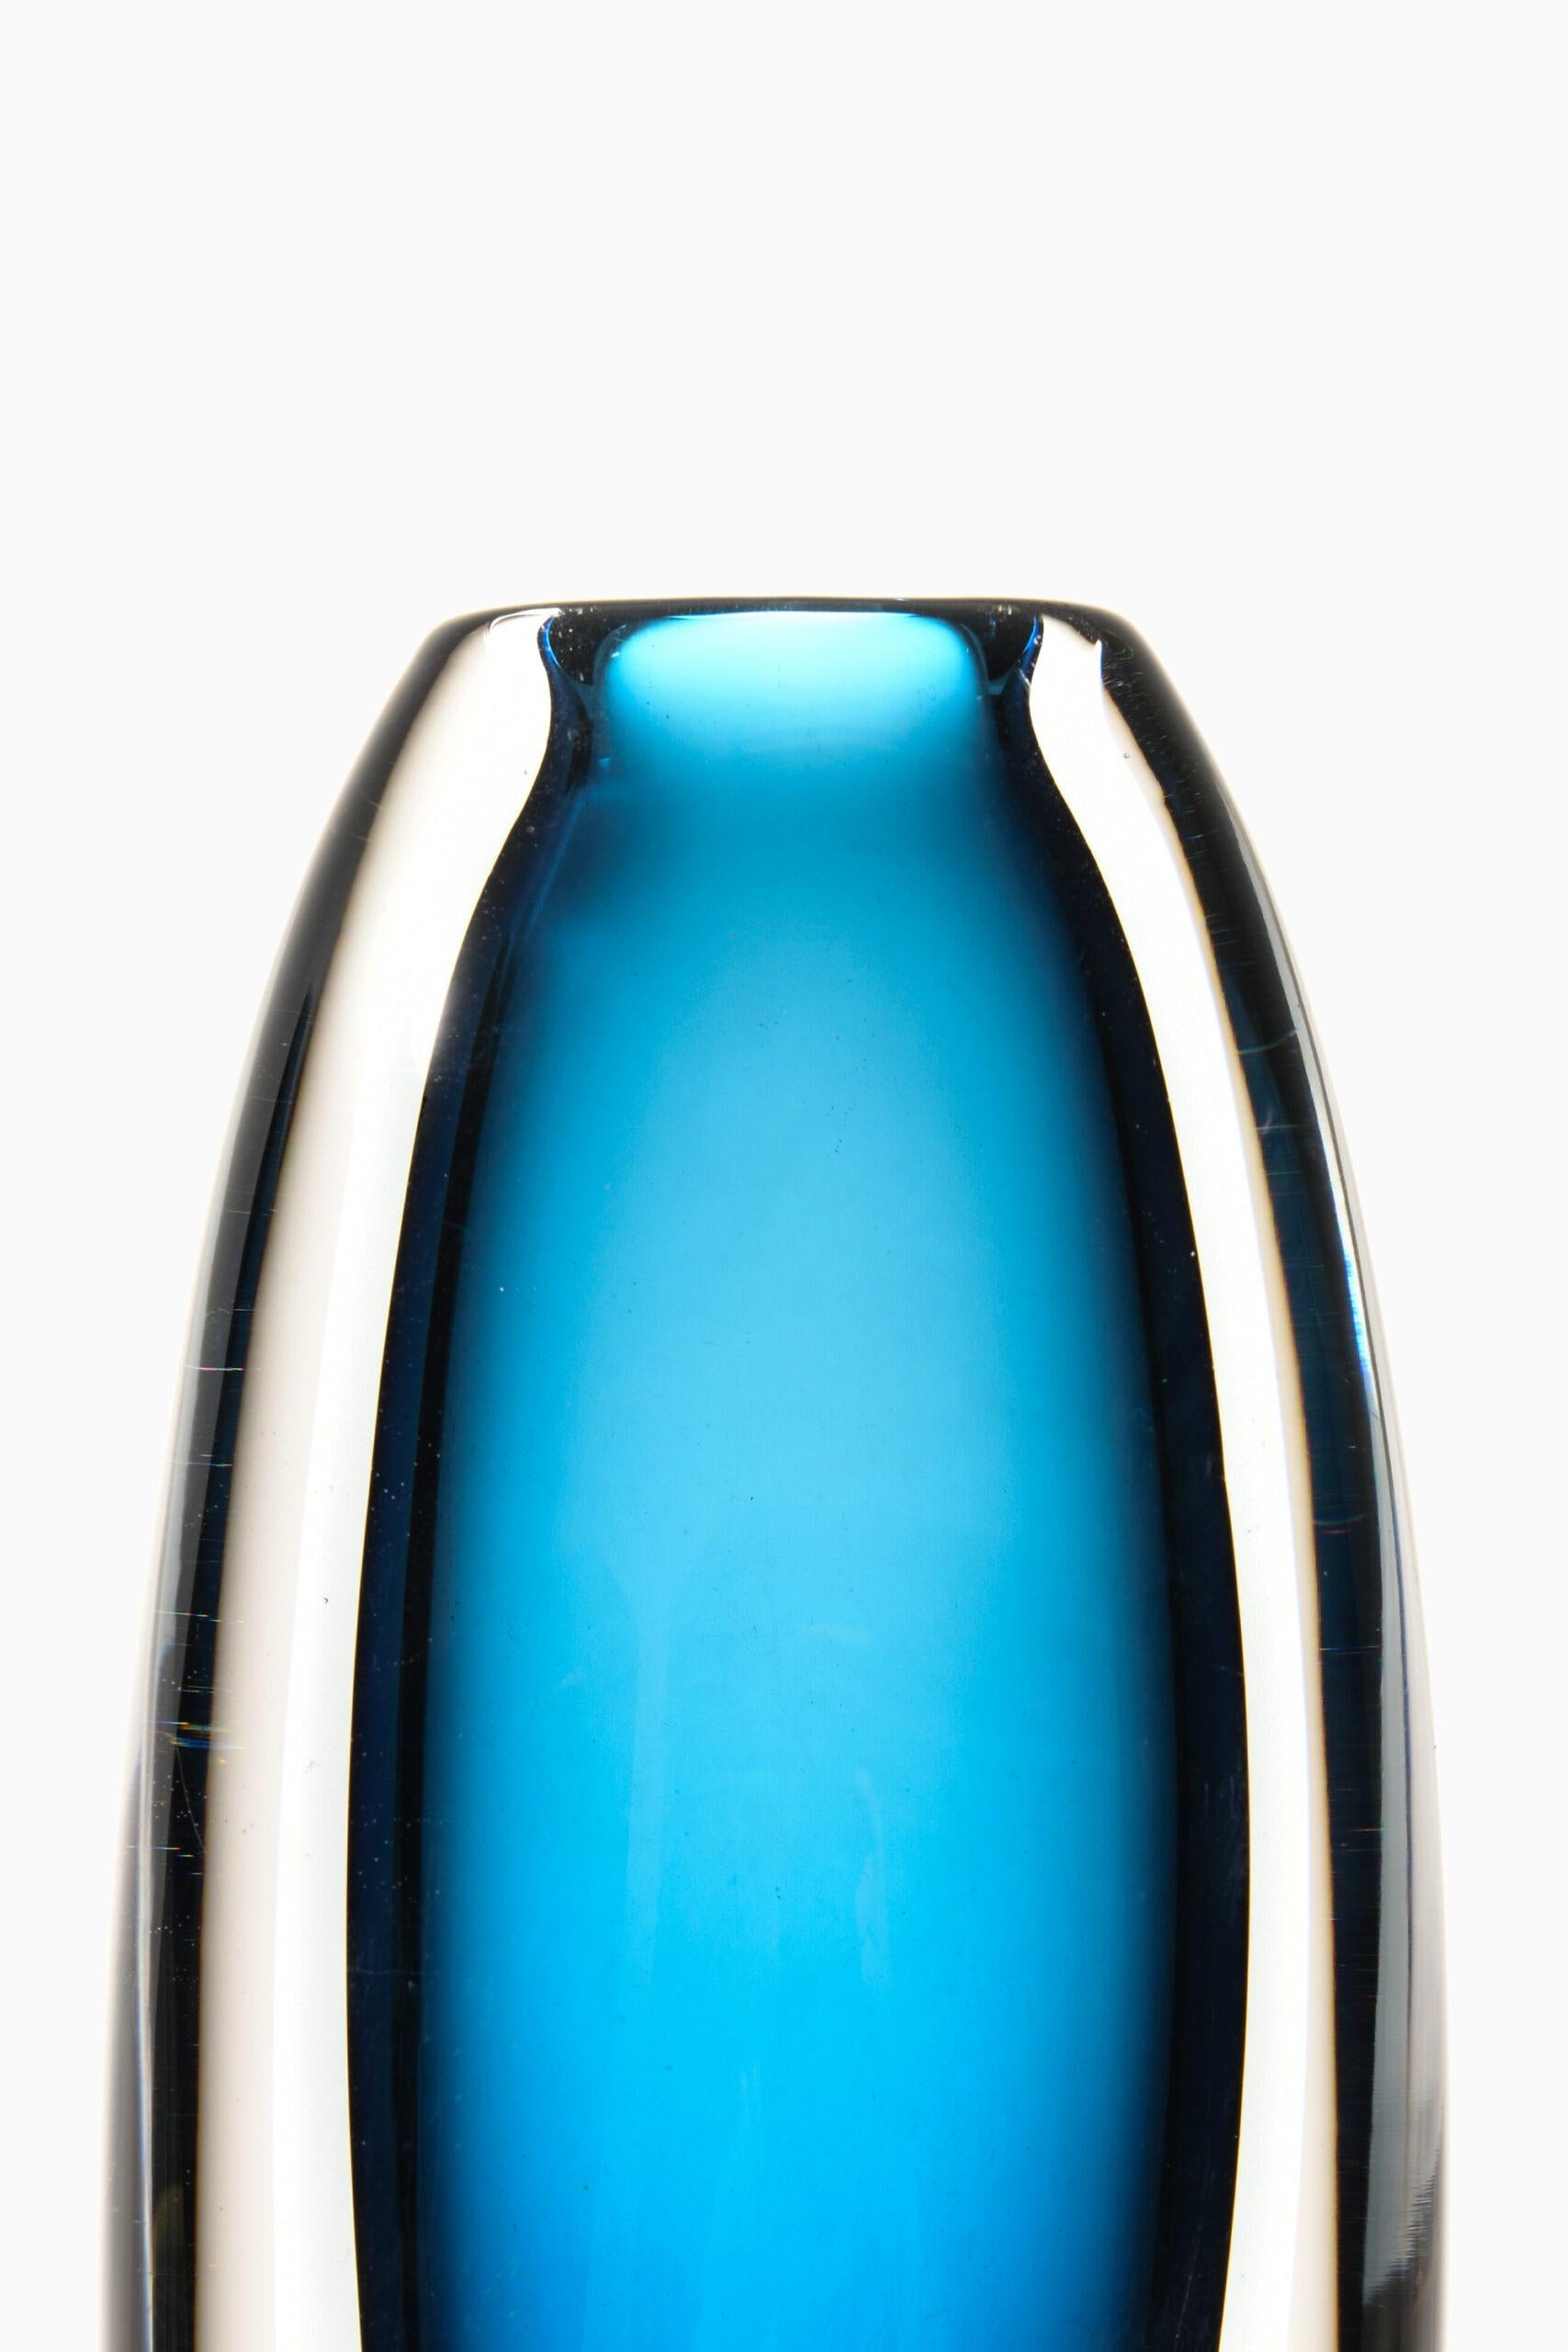 Glass vase designed by Vicke Lindstrand. Produced by Kosta in Sweden. Signed ‘Kosta 1828 VL'.